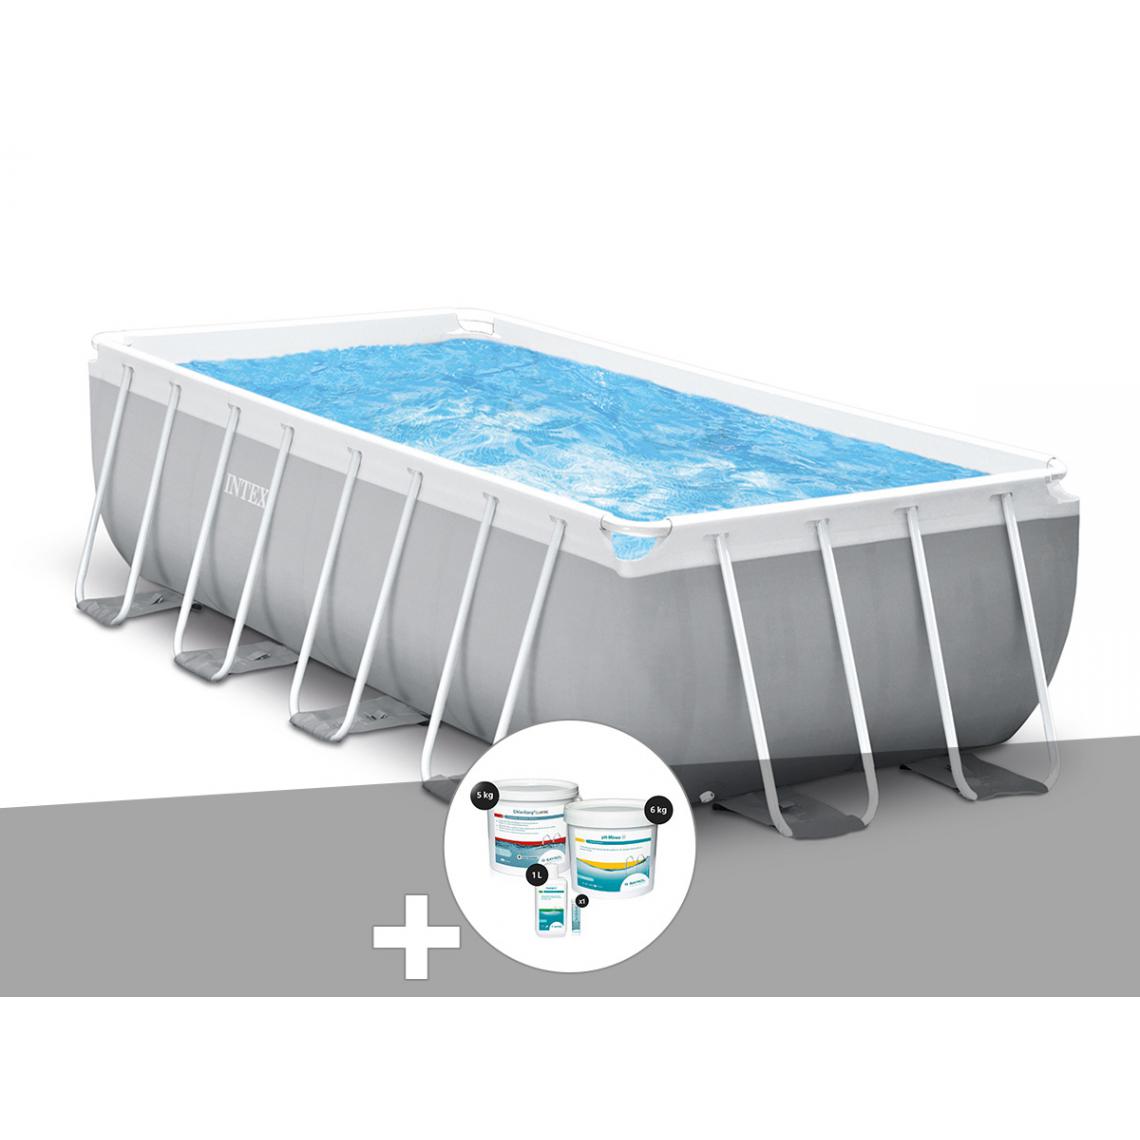 Intex - Kit piscine tubulaire Intex Prism Frame rectangulaire 4,00 x 2,00 x 1,22 m + Kit de traitement au chlore - Piscine Tubulaire